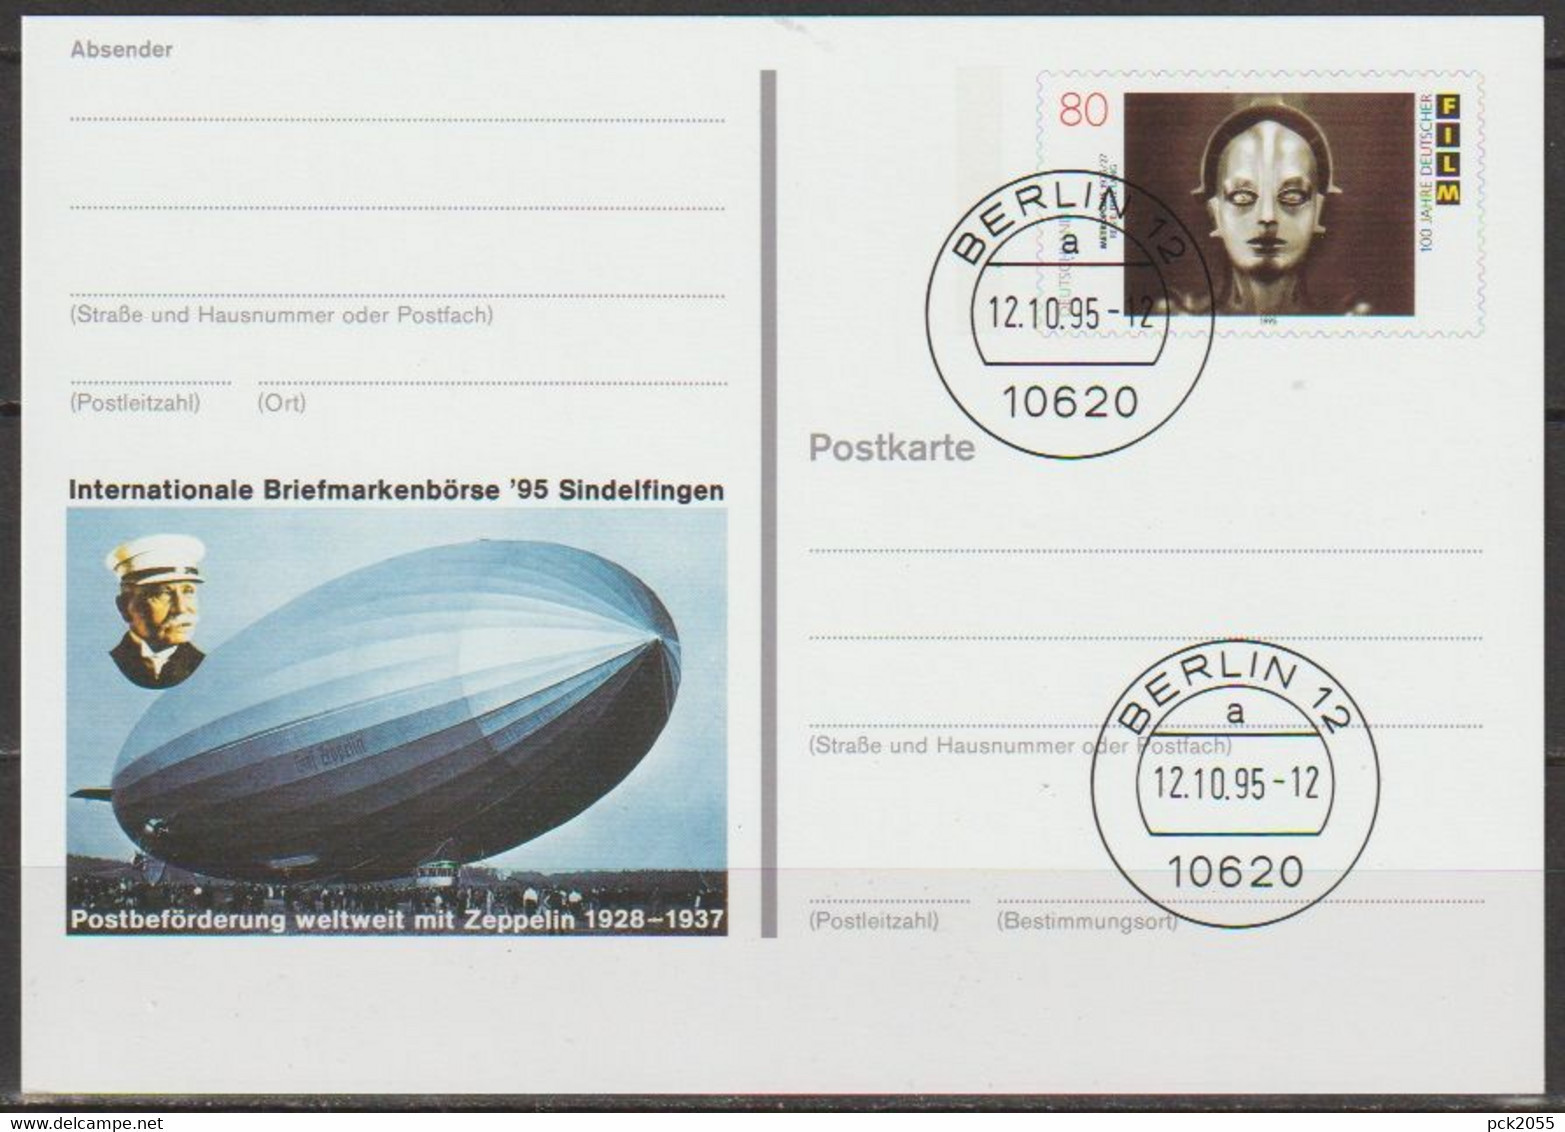 BRD Ganzsache 1995 PSo40 Briefmarkenbörse Sindelfingen Ersttagsstempel 12.10.95 Berlin  (d372)günstige Versandkosten - Postcards - Used